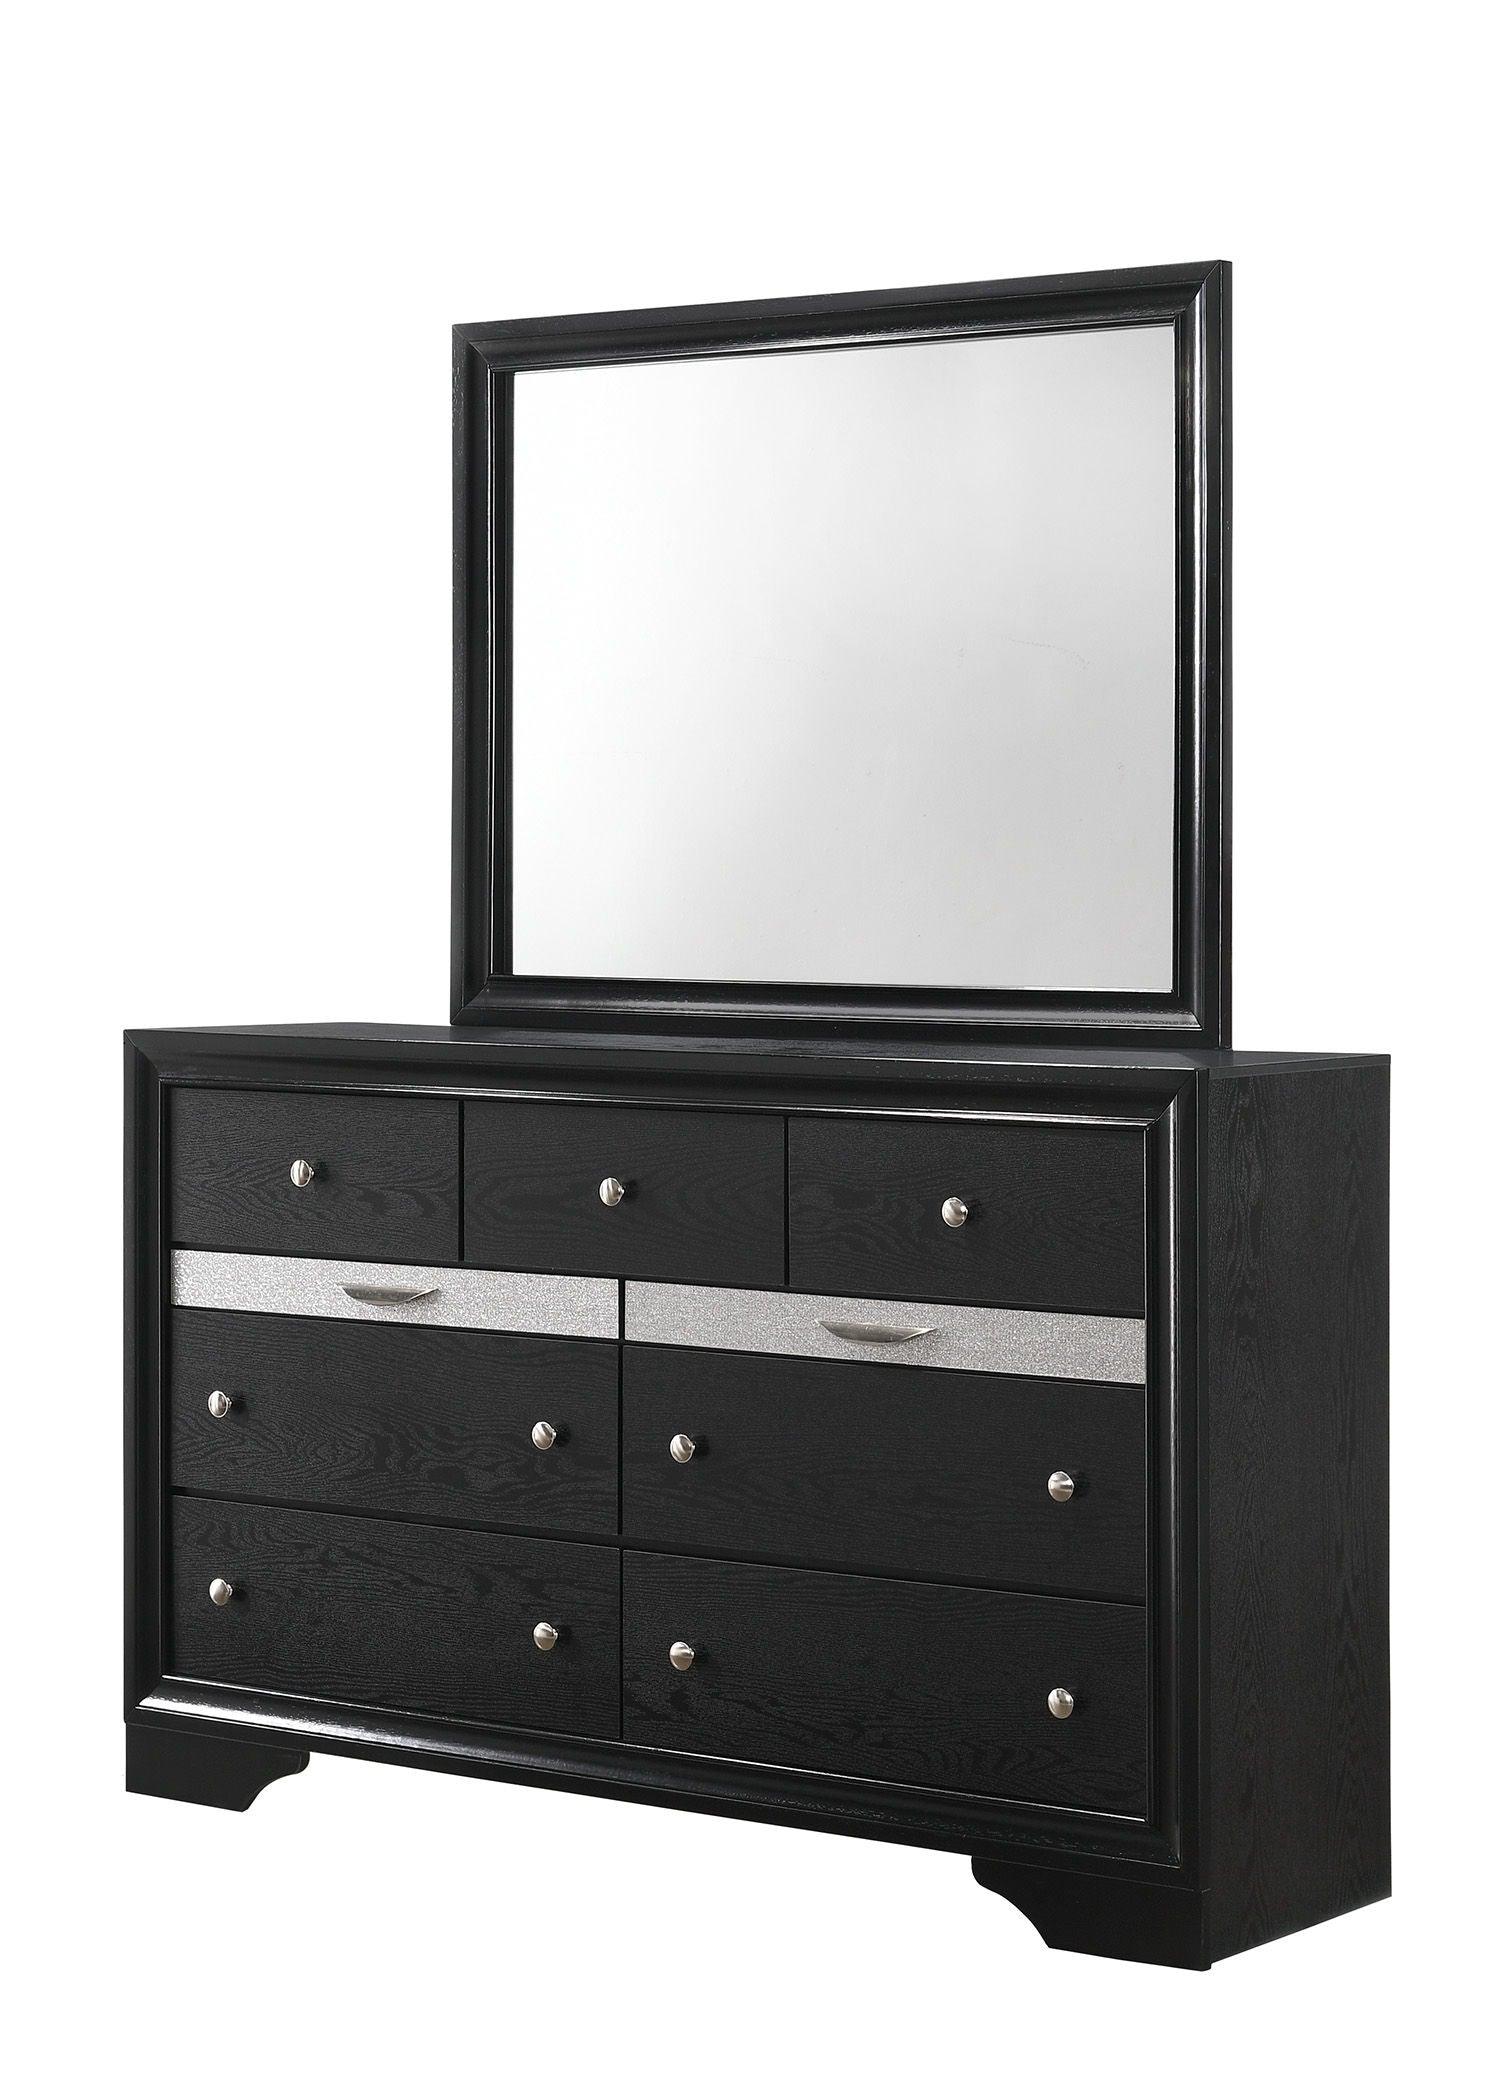 Crown Mark - Regata - Dresser - 5th Avenue Furniture